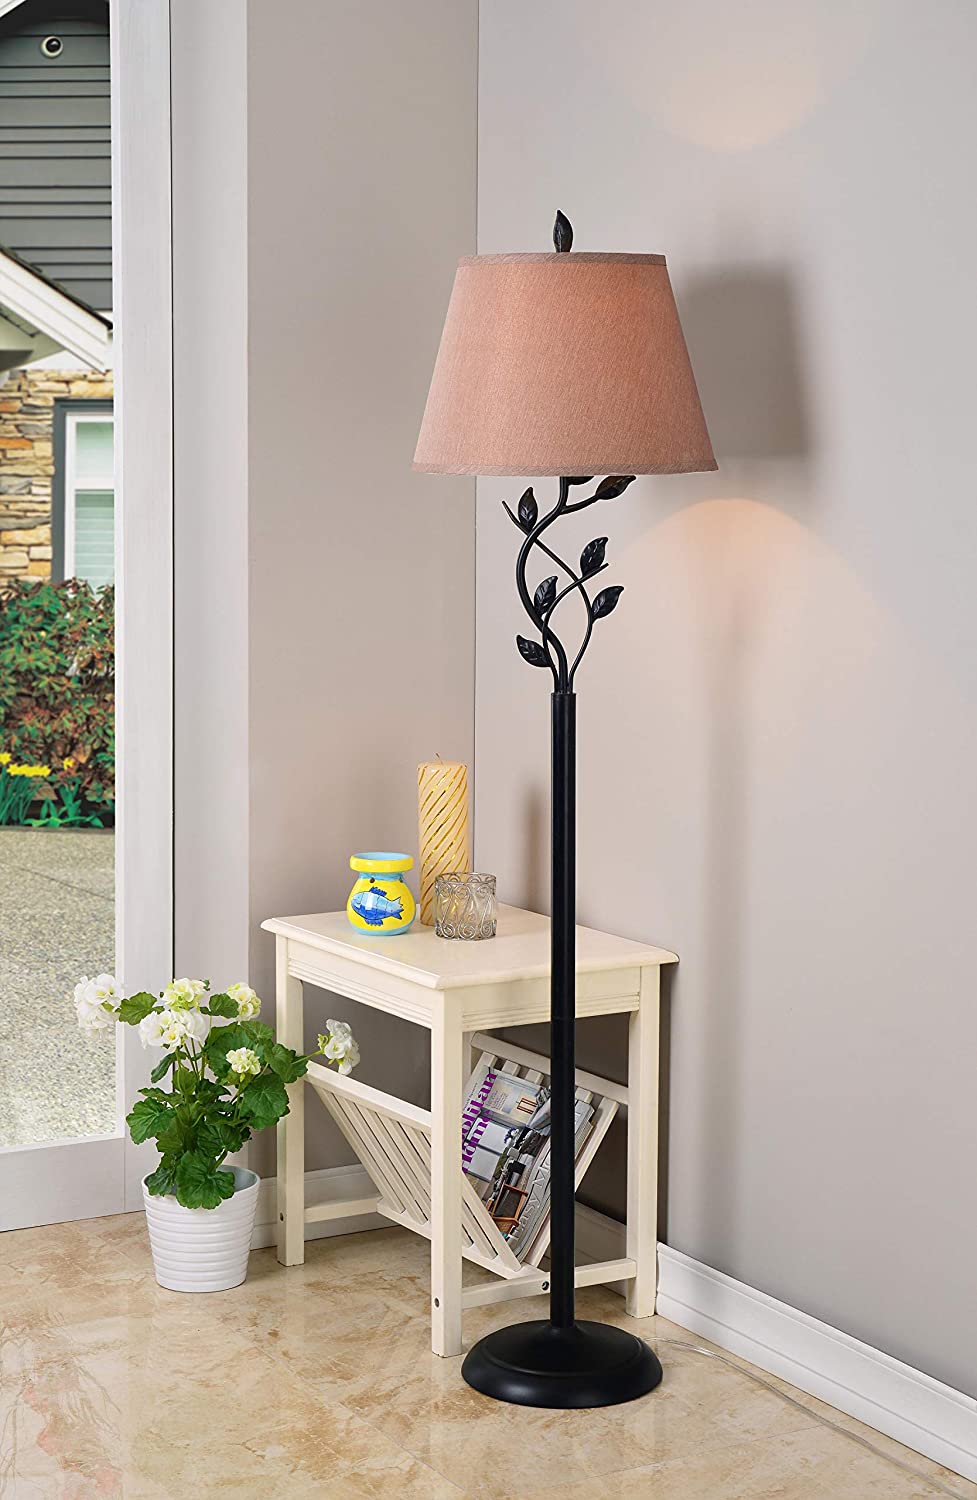 Kenroy Home Rustic Floor Lamp 10 Unique Floor Lamps to Brighten Your Living Room - 19